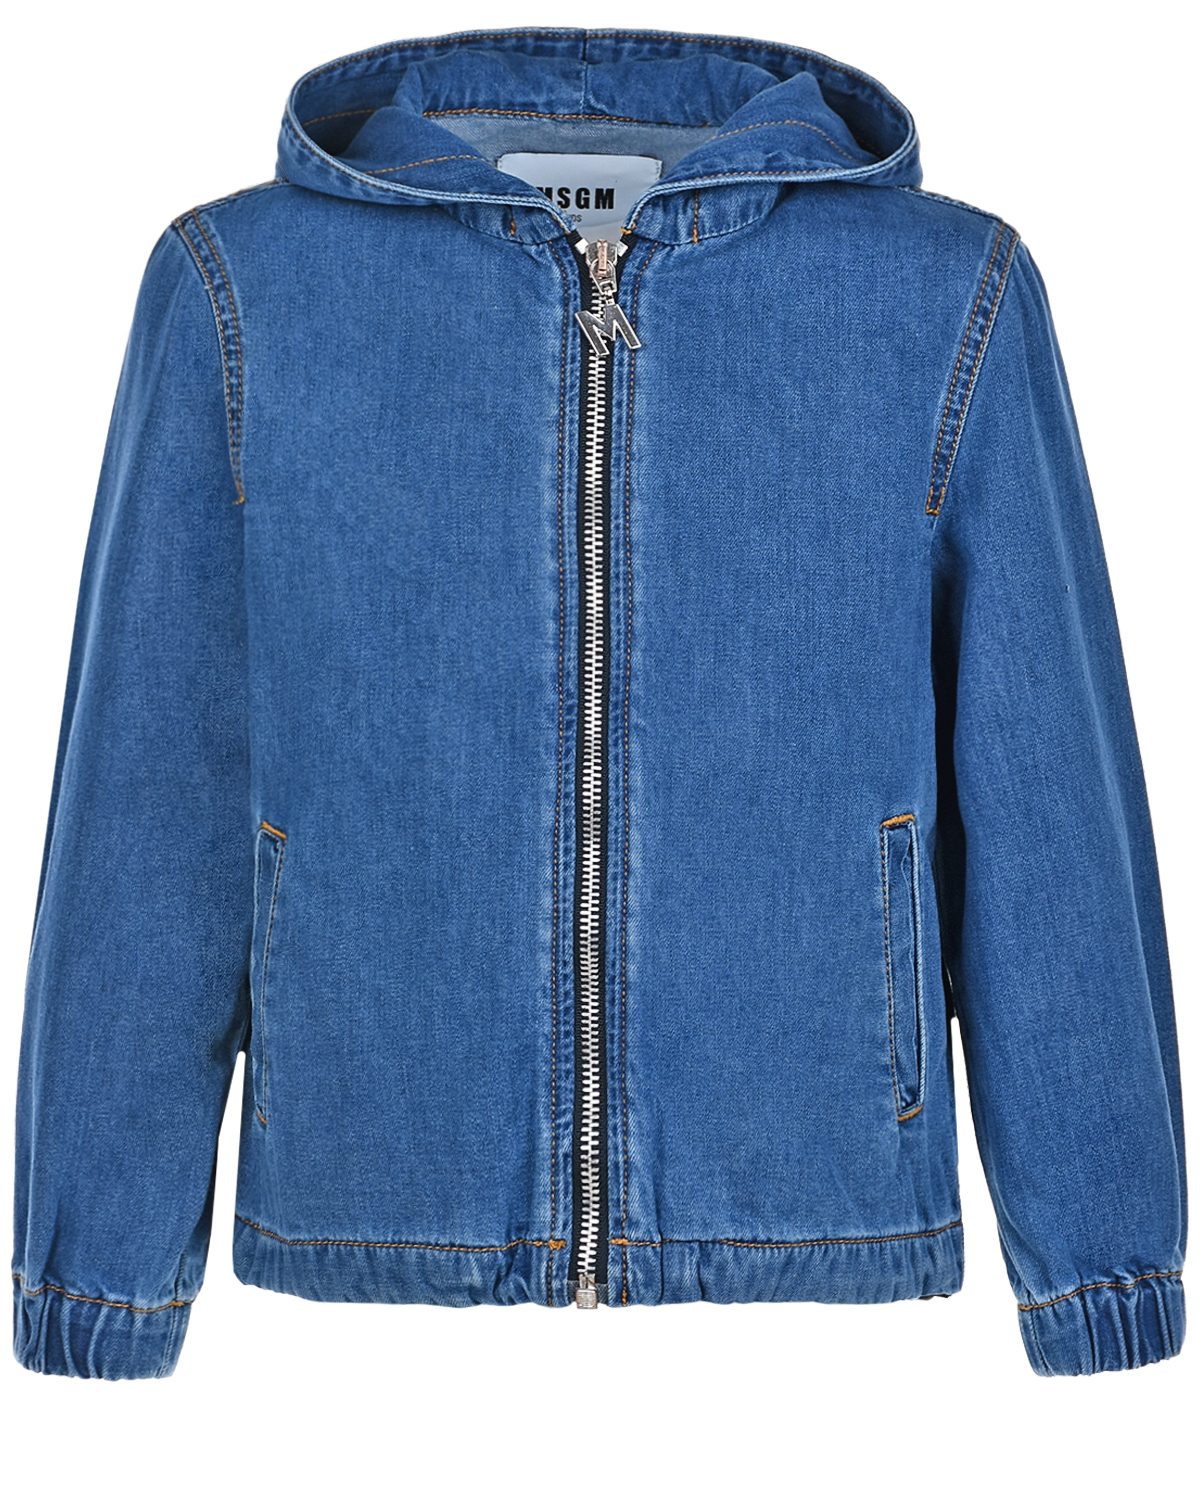 Джинсовая куртка на молнии MSGM детская, размер 128, цвет синий